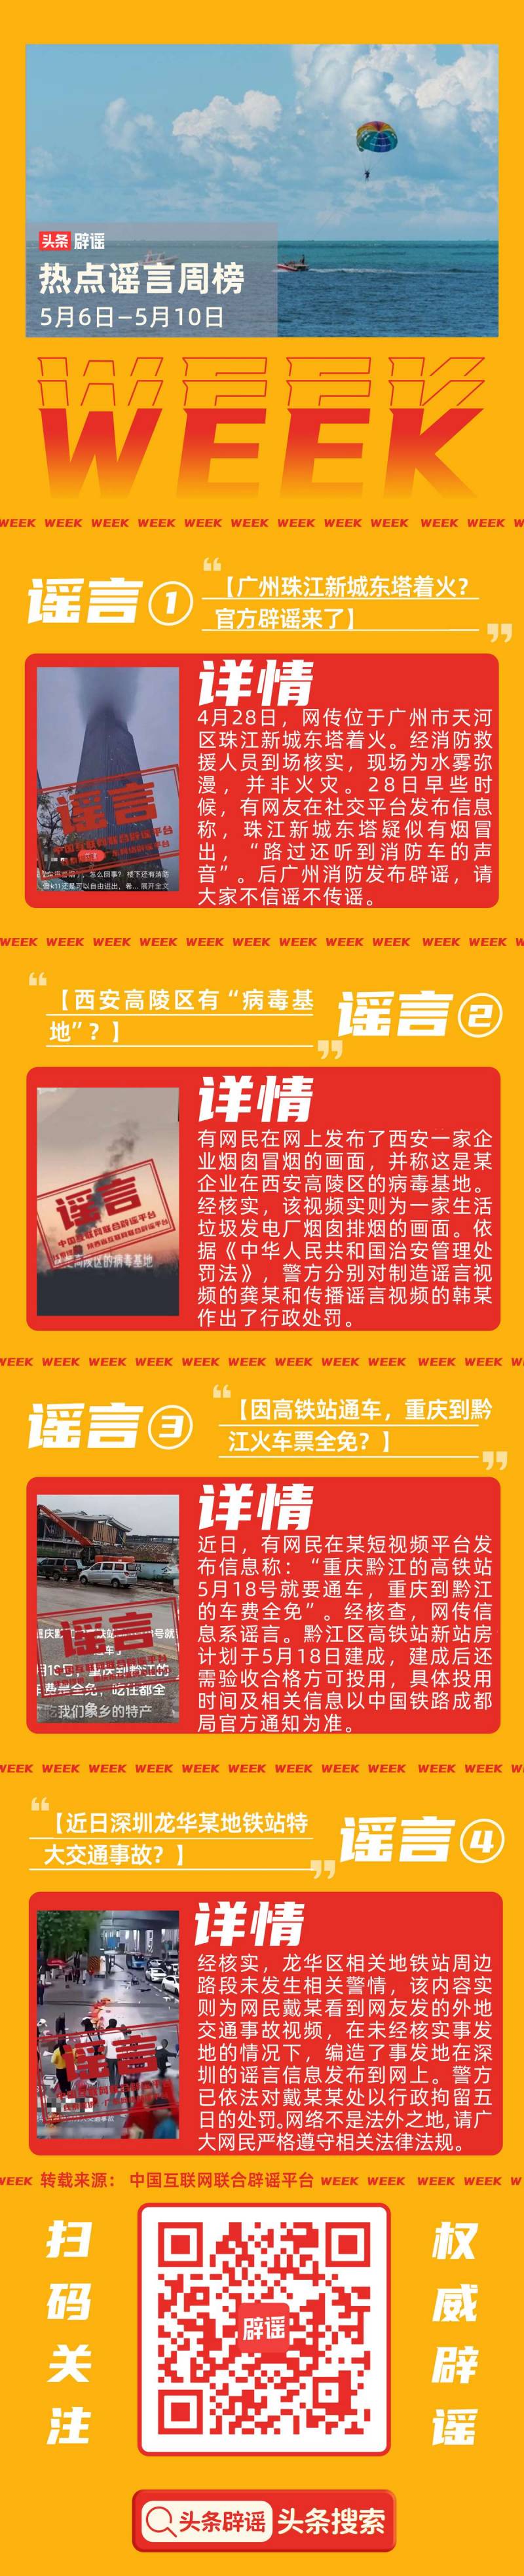 珠江新城东塔火灾消息不实，官方澄清